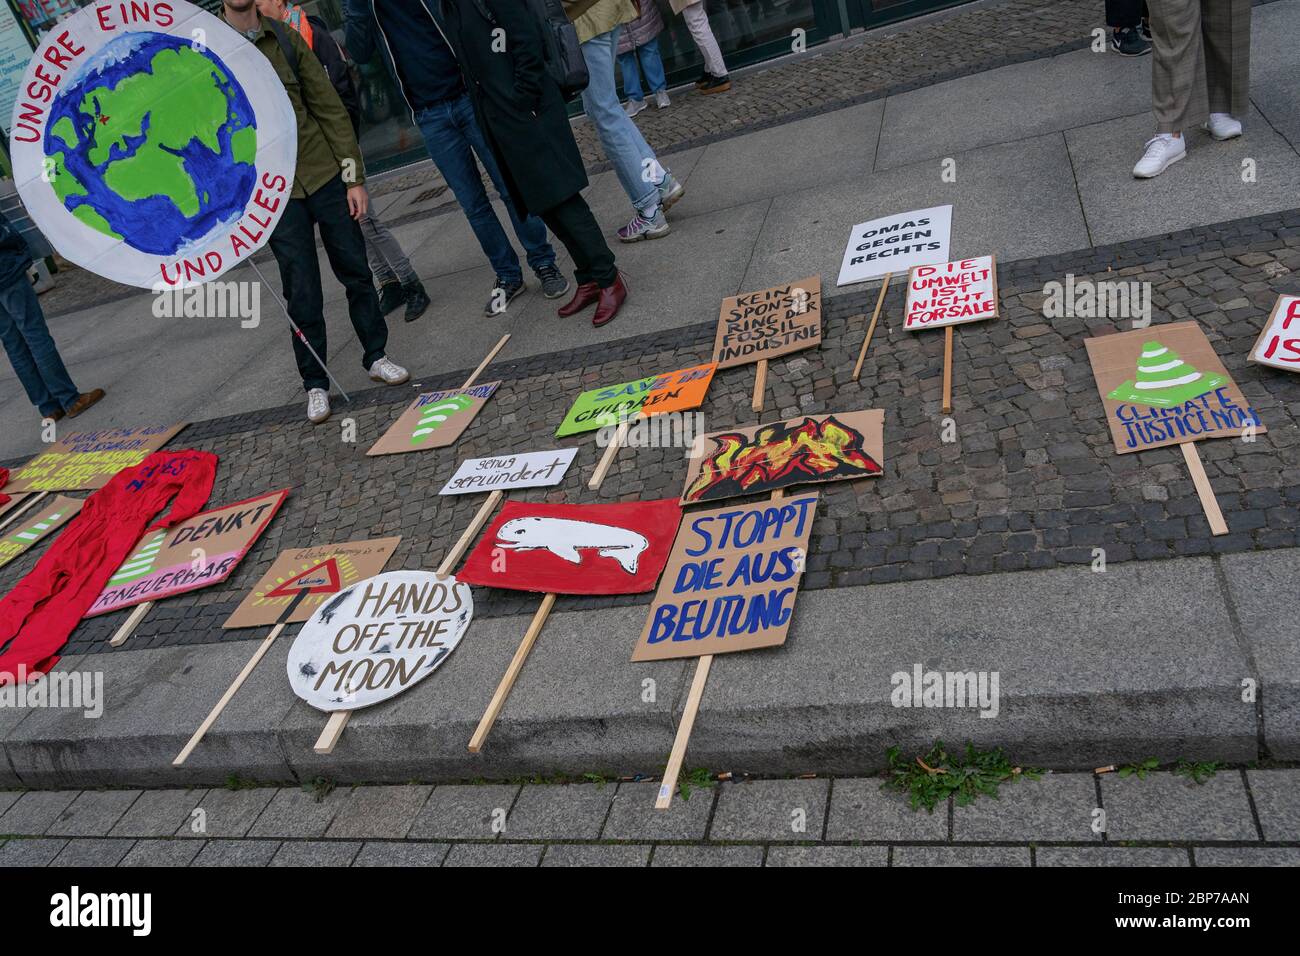 Los alumnos se manifiestan con carteles de protesta durante los viernes para la futura huelga climática en la Puerta de Brandenburgo -Pariser Platz- en Berlín. Foto de stock